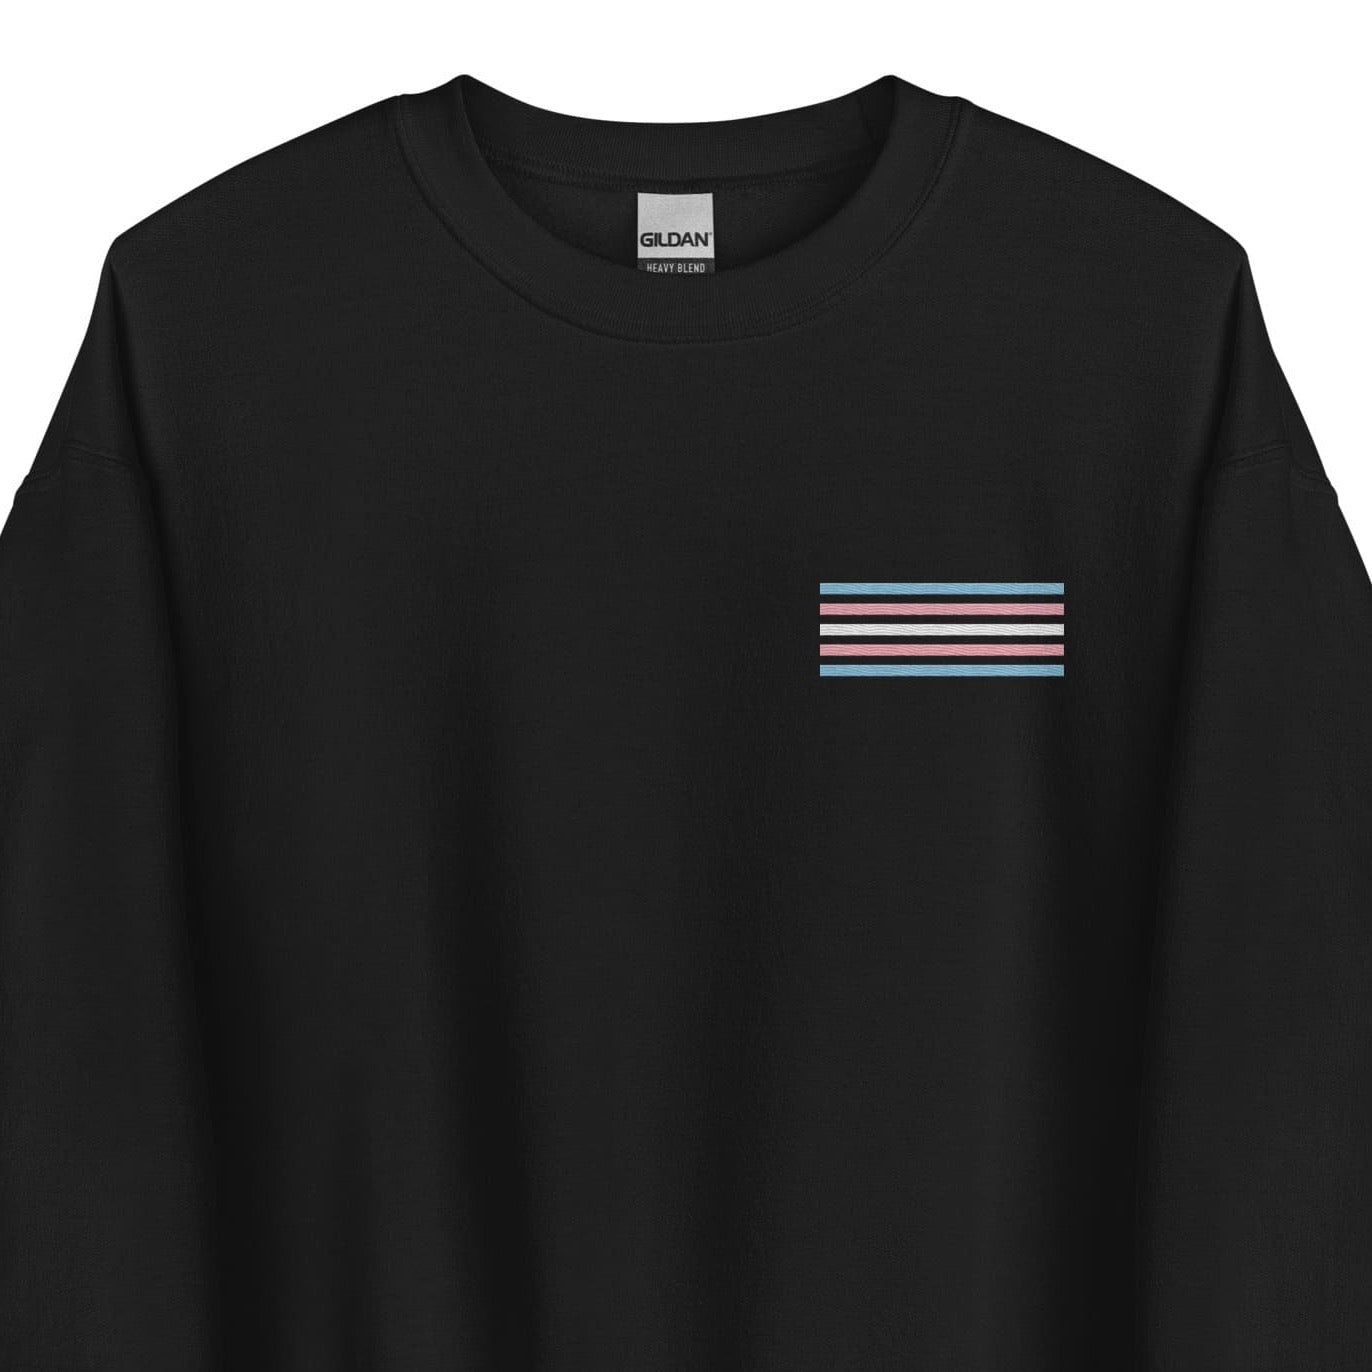 transgender sweatshirt, subtle trans pride flag embroidered pocket design sweater, main